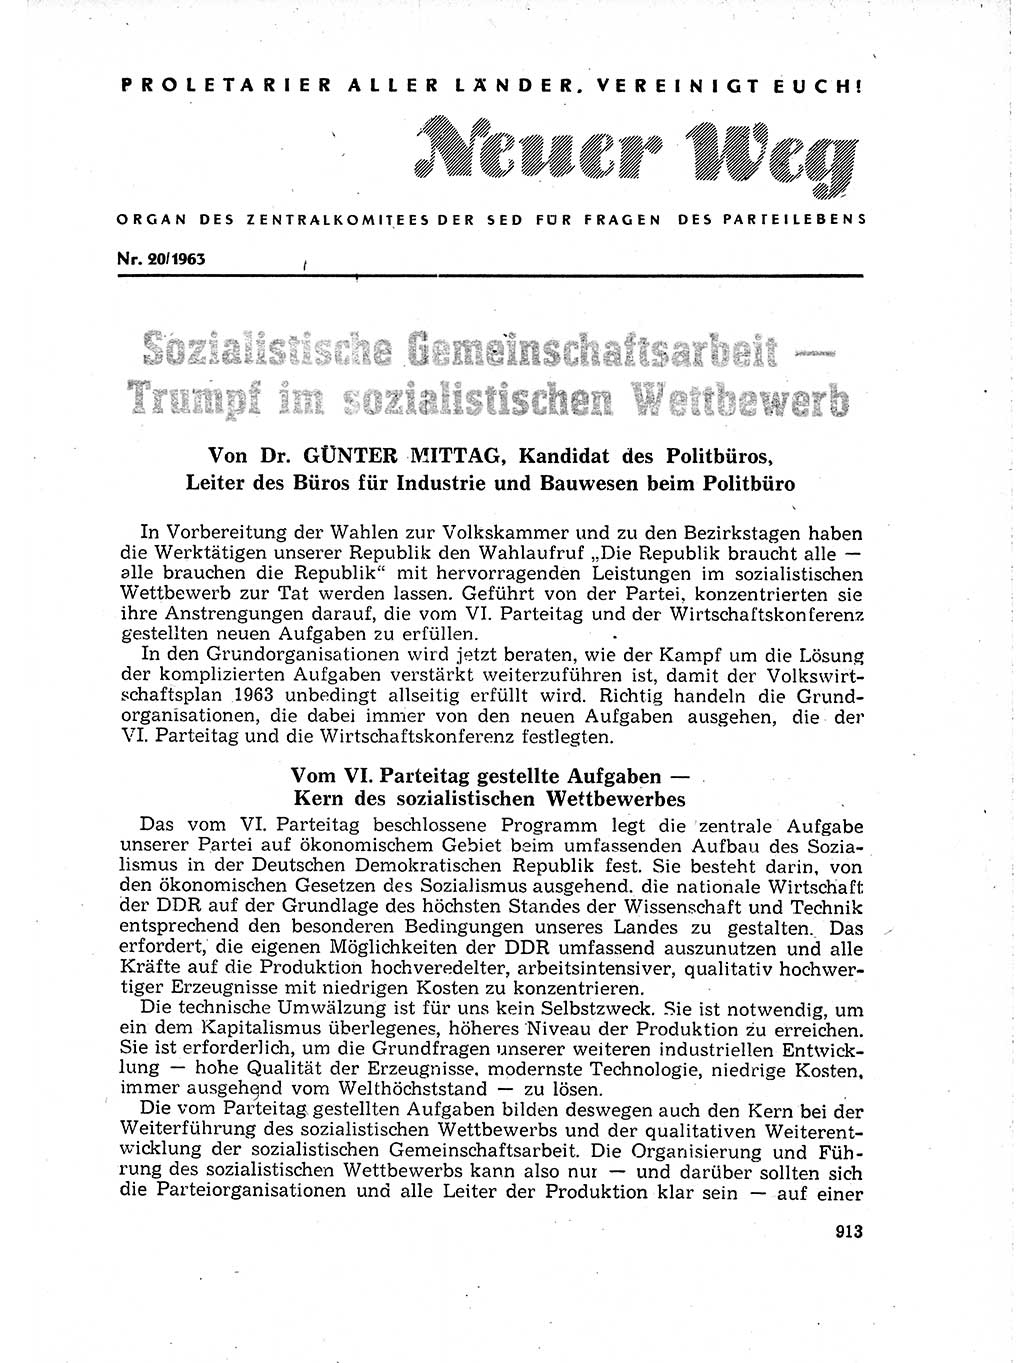 Neuer Weg (NW), Organ des Zentralkomitees (ZK) der SED (Sozialistische Einheitspartei Deutschlands) für Fragen des Parteilebens, 18. Jahrgang [Deutsche Demokratische Republik (DDR)] 1963, Seite 913 (NW ZK SED DDR 1963, S. 913)